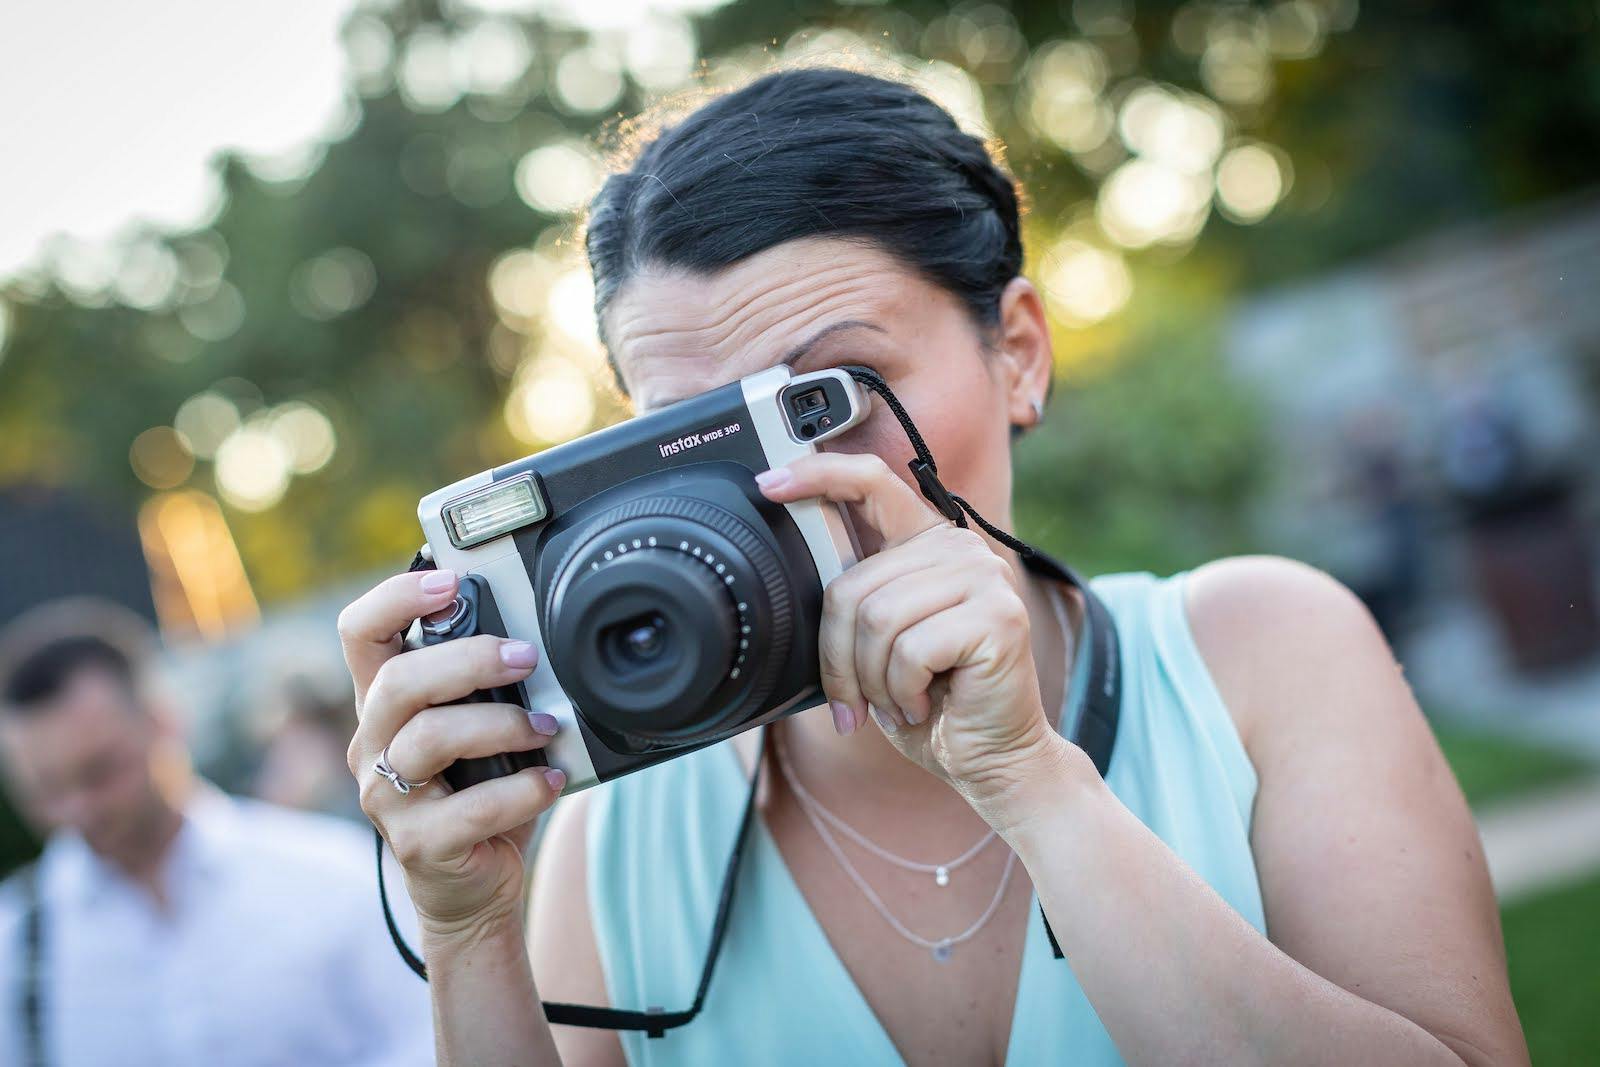 Svatební fotograf: rady a tipy, jak vybrat toho pravého, část 2